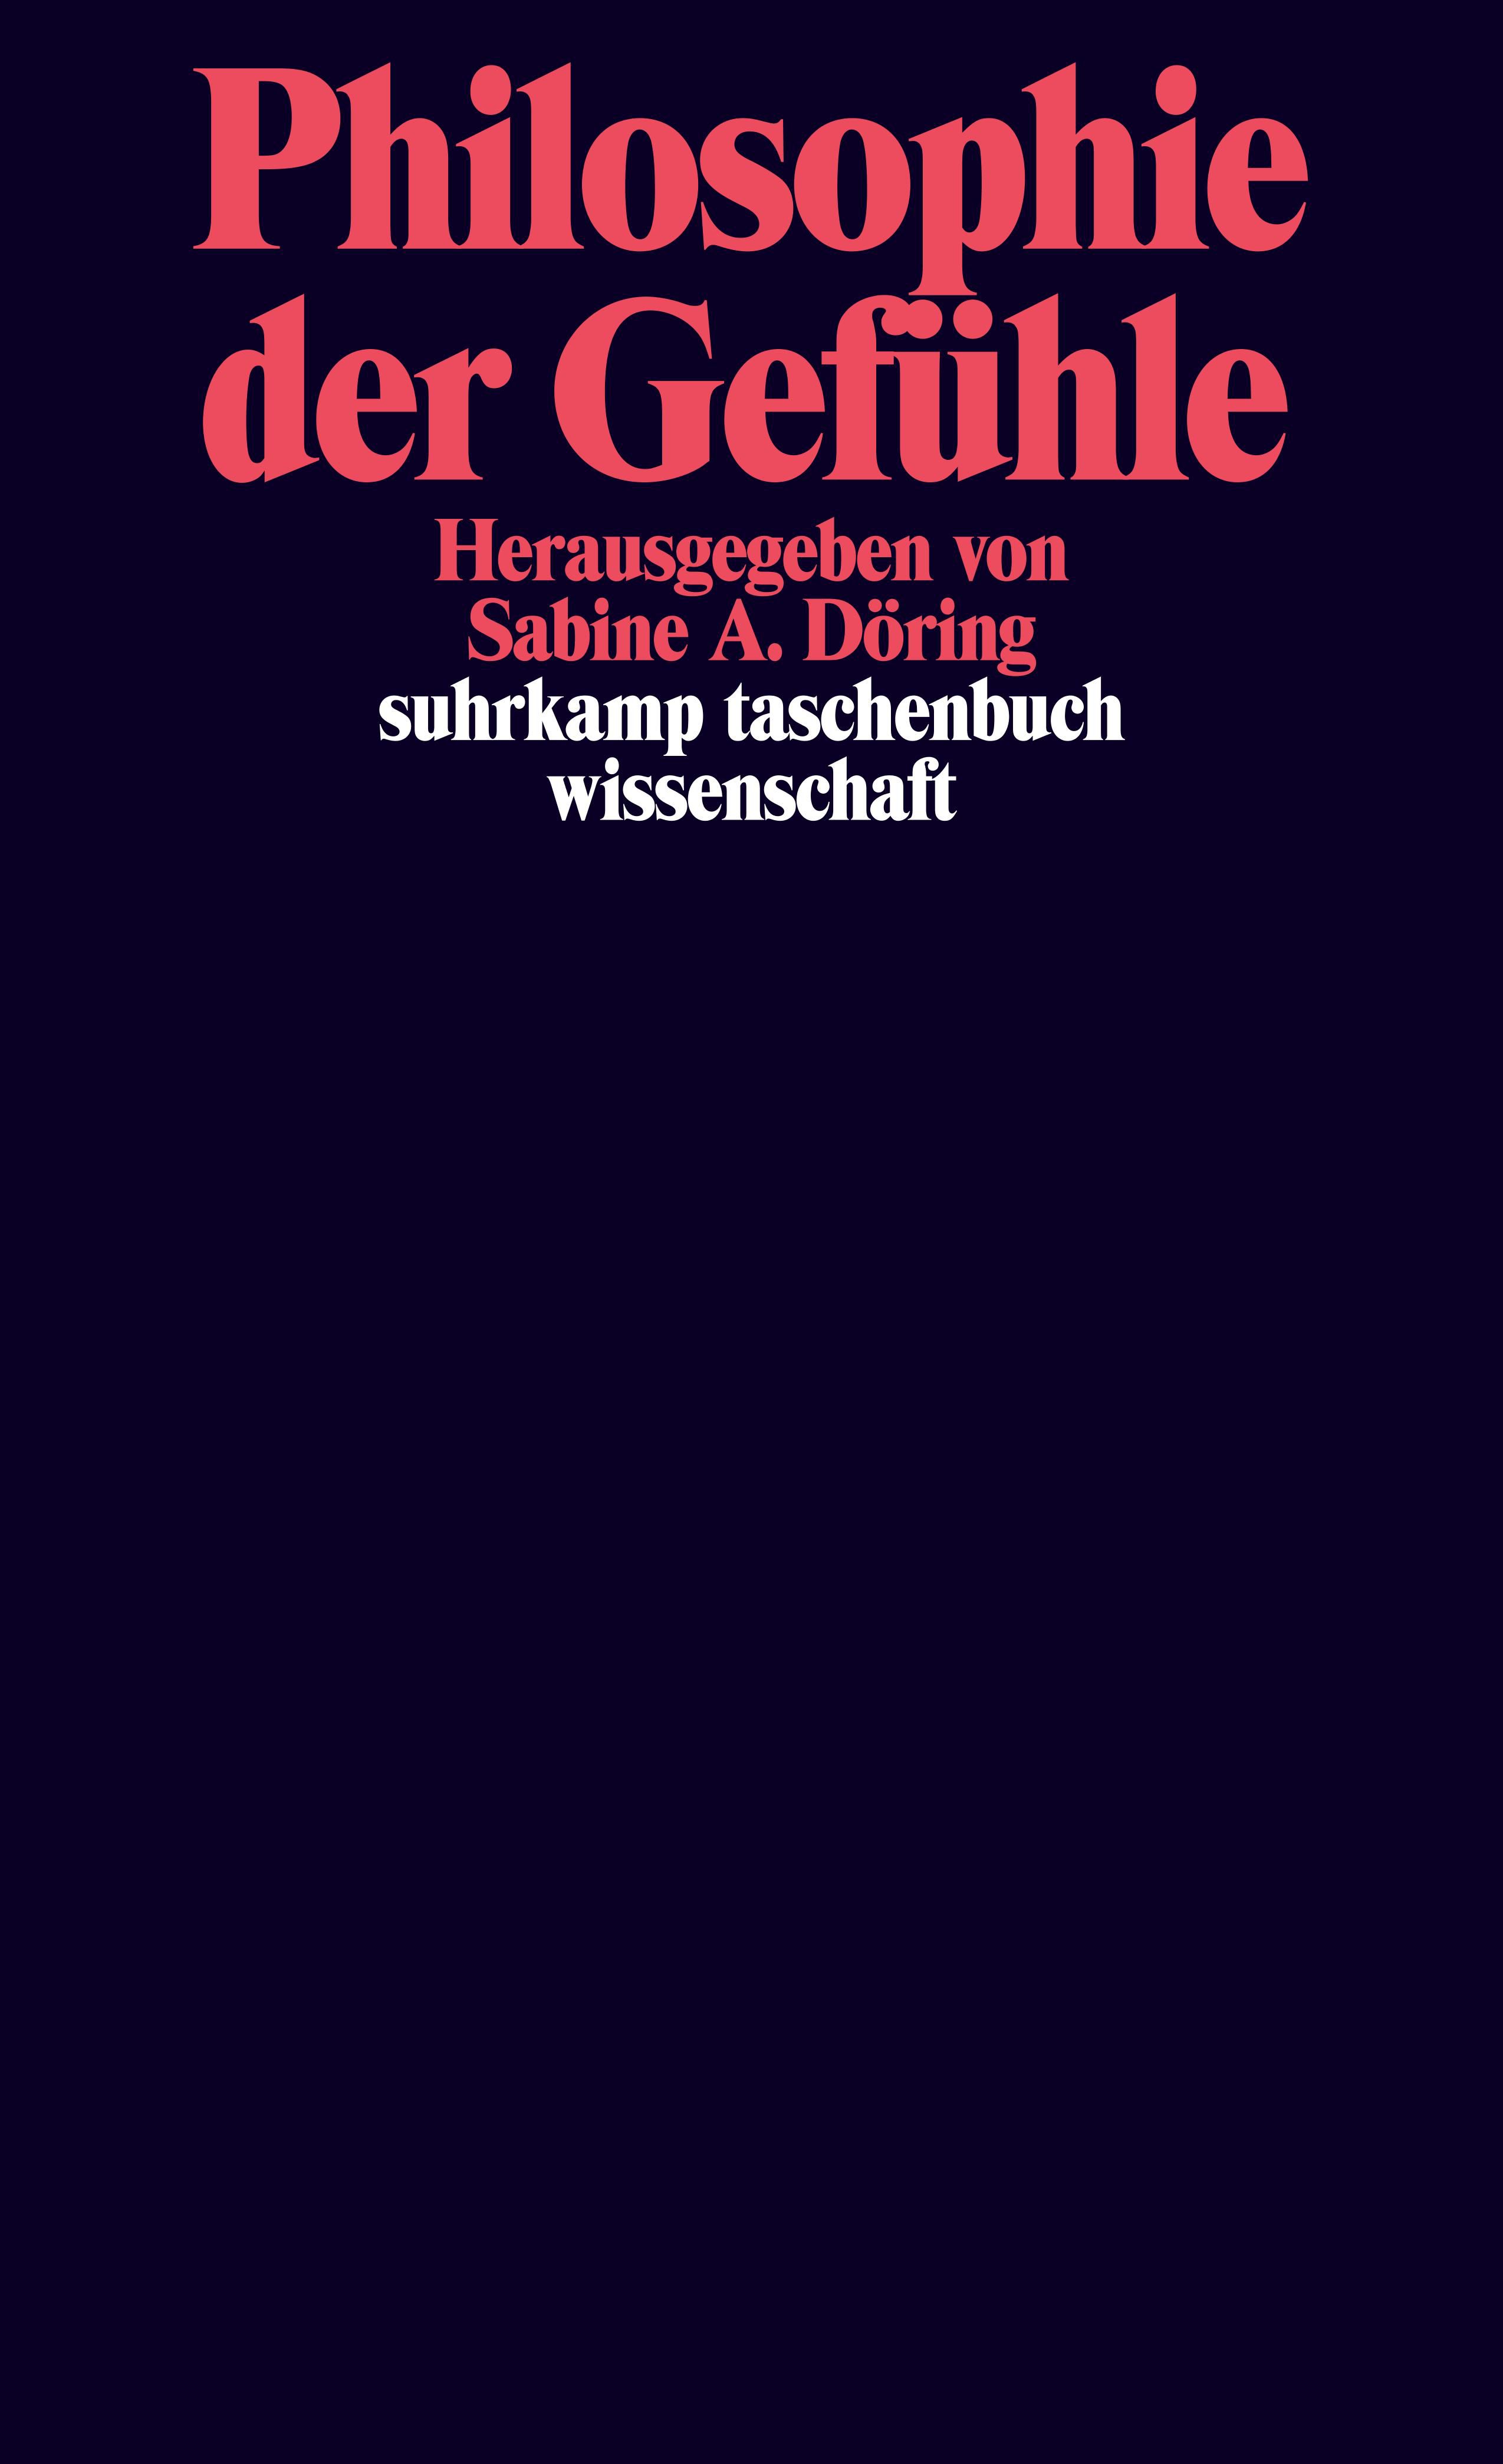 Husserl und die Philosophie des Geistes. Buch von Manfred Frank 